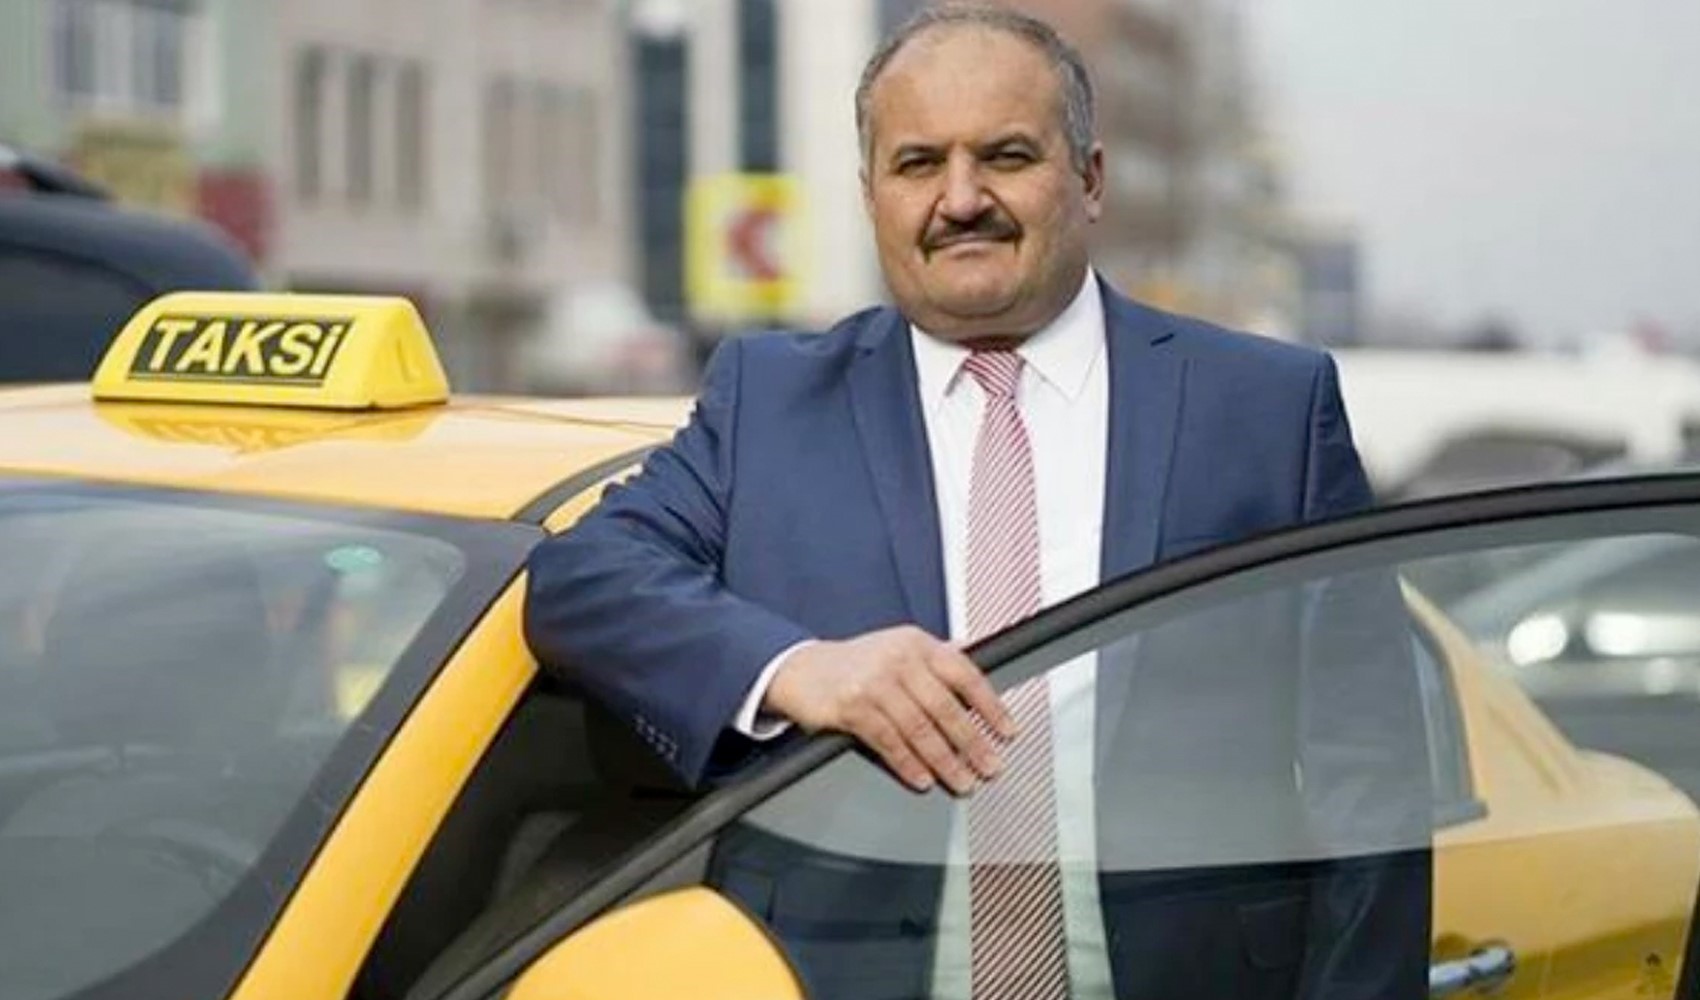 Eyüp Aksu taksicilere seslendi: Taksimetreleri kurun, geliyor Murat Kurum